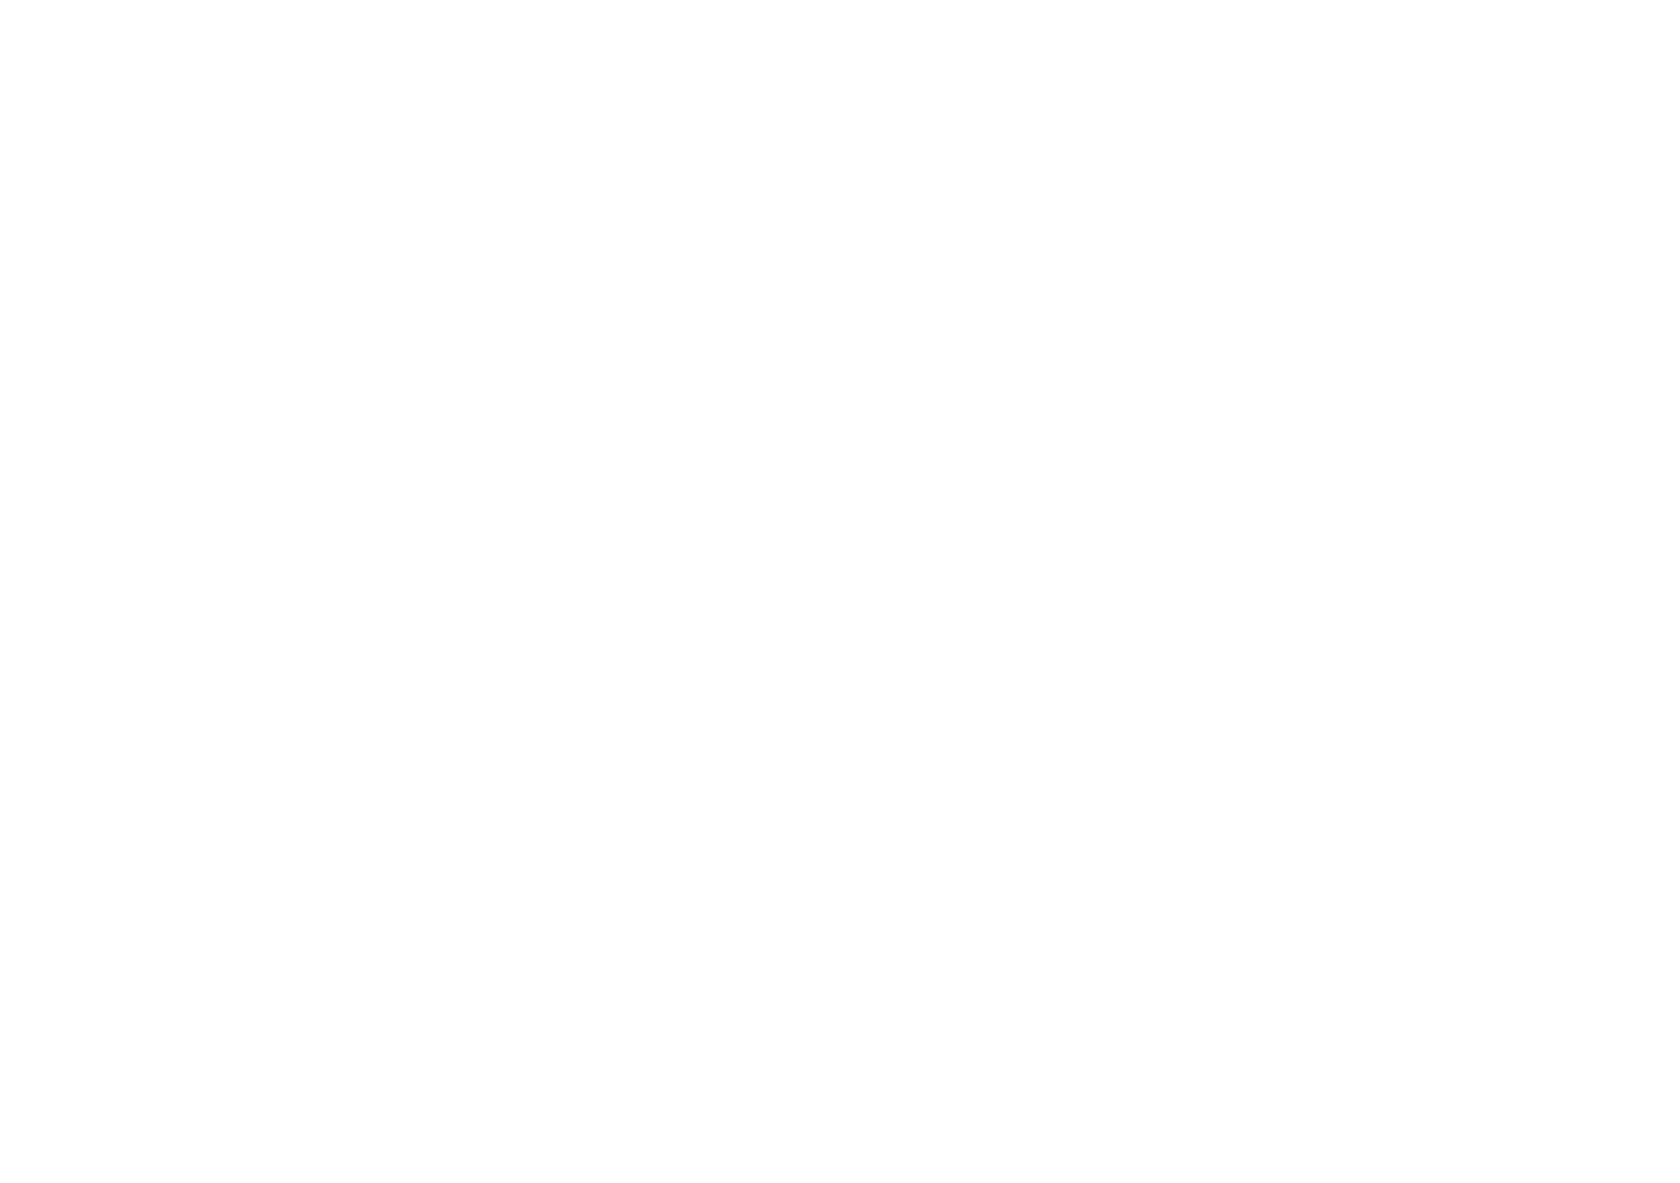 Brooke Layla